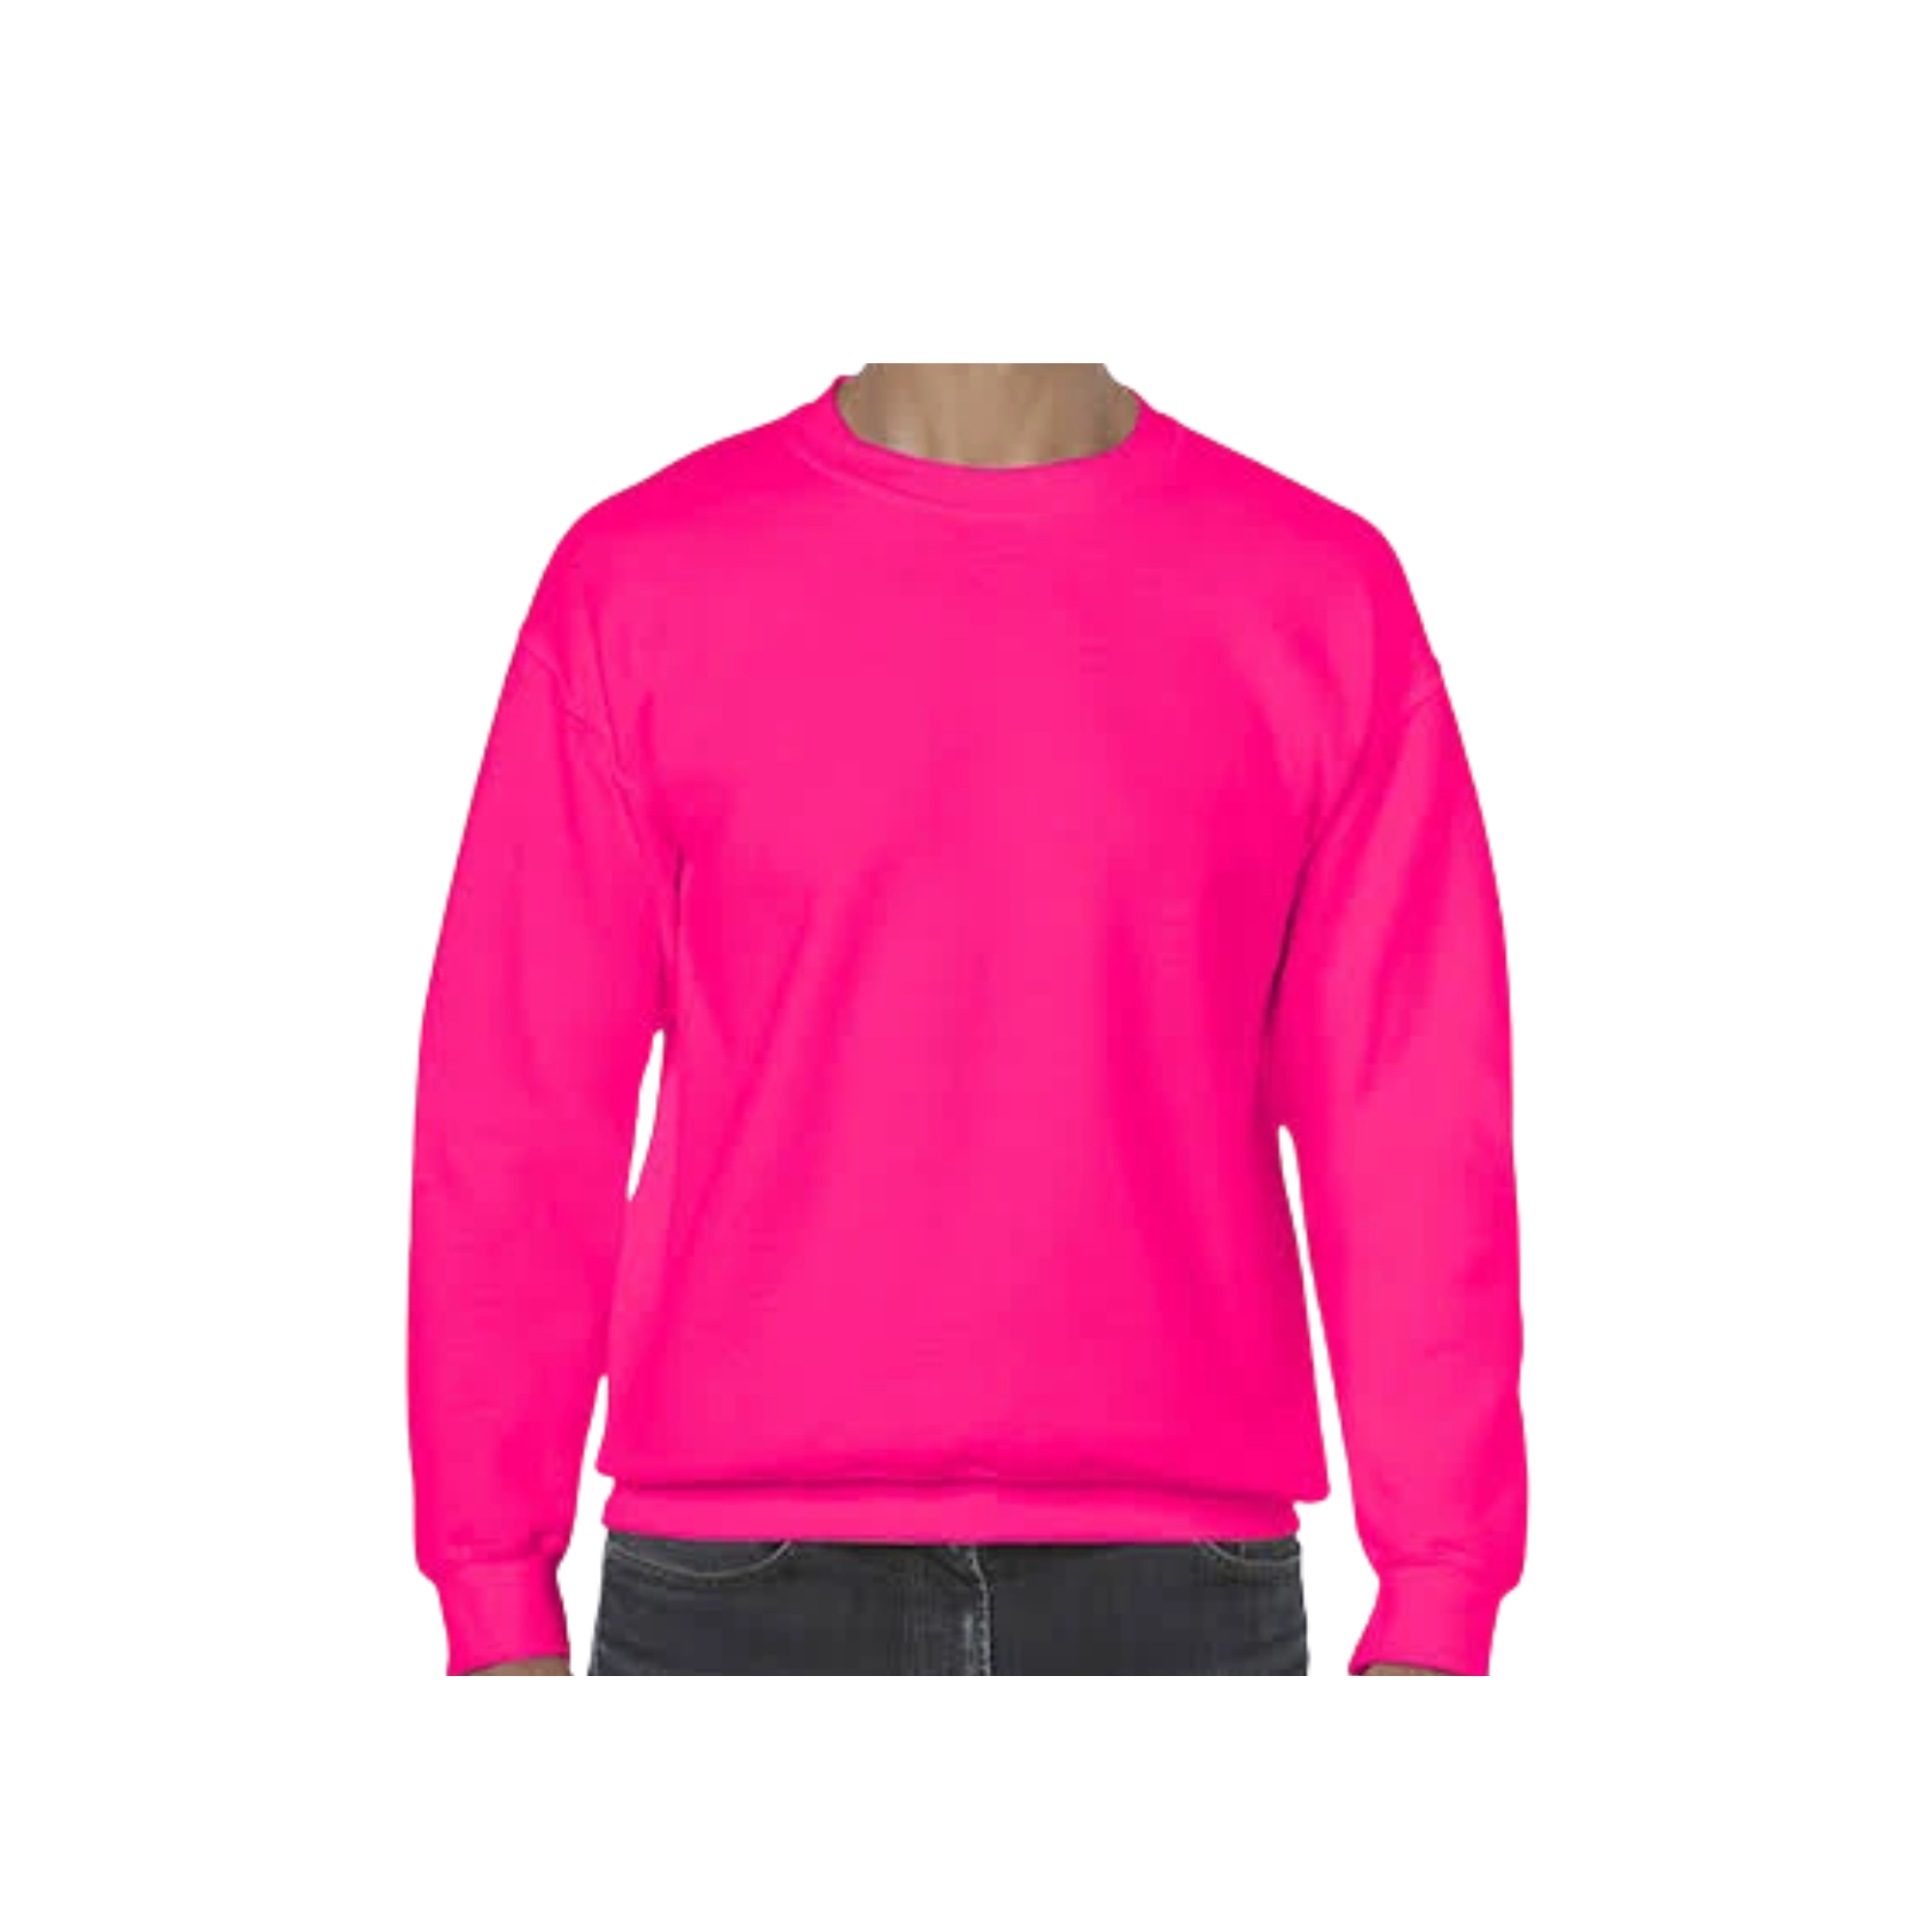 100% Polyester Adult Sublimation Sweatshirt, Unisex Polyester Sweatshirt,  Sublimation Sweatshirt